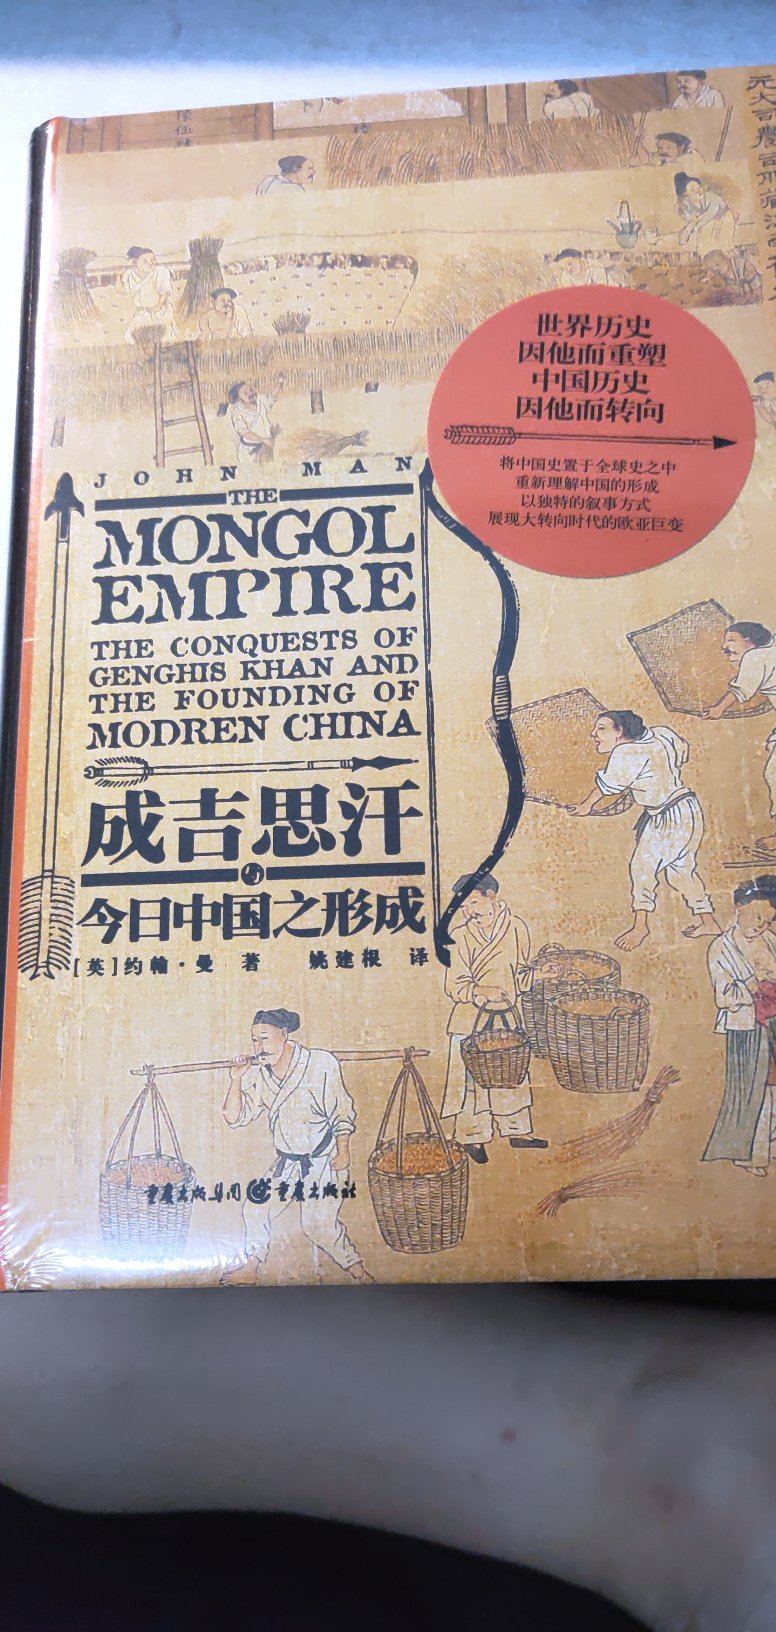 本书作者为蒙古史权威，观点独到，取材广泛，内容丰富，值得一读。